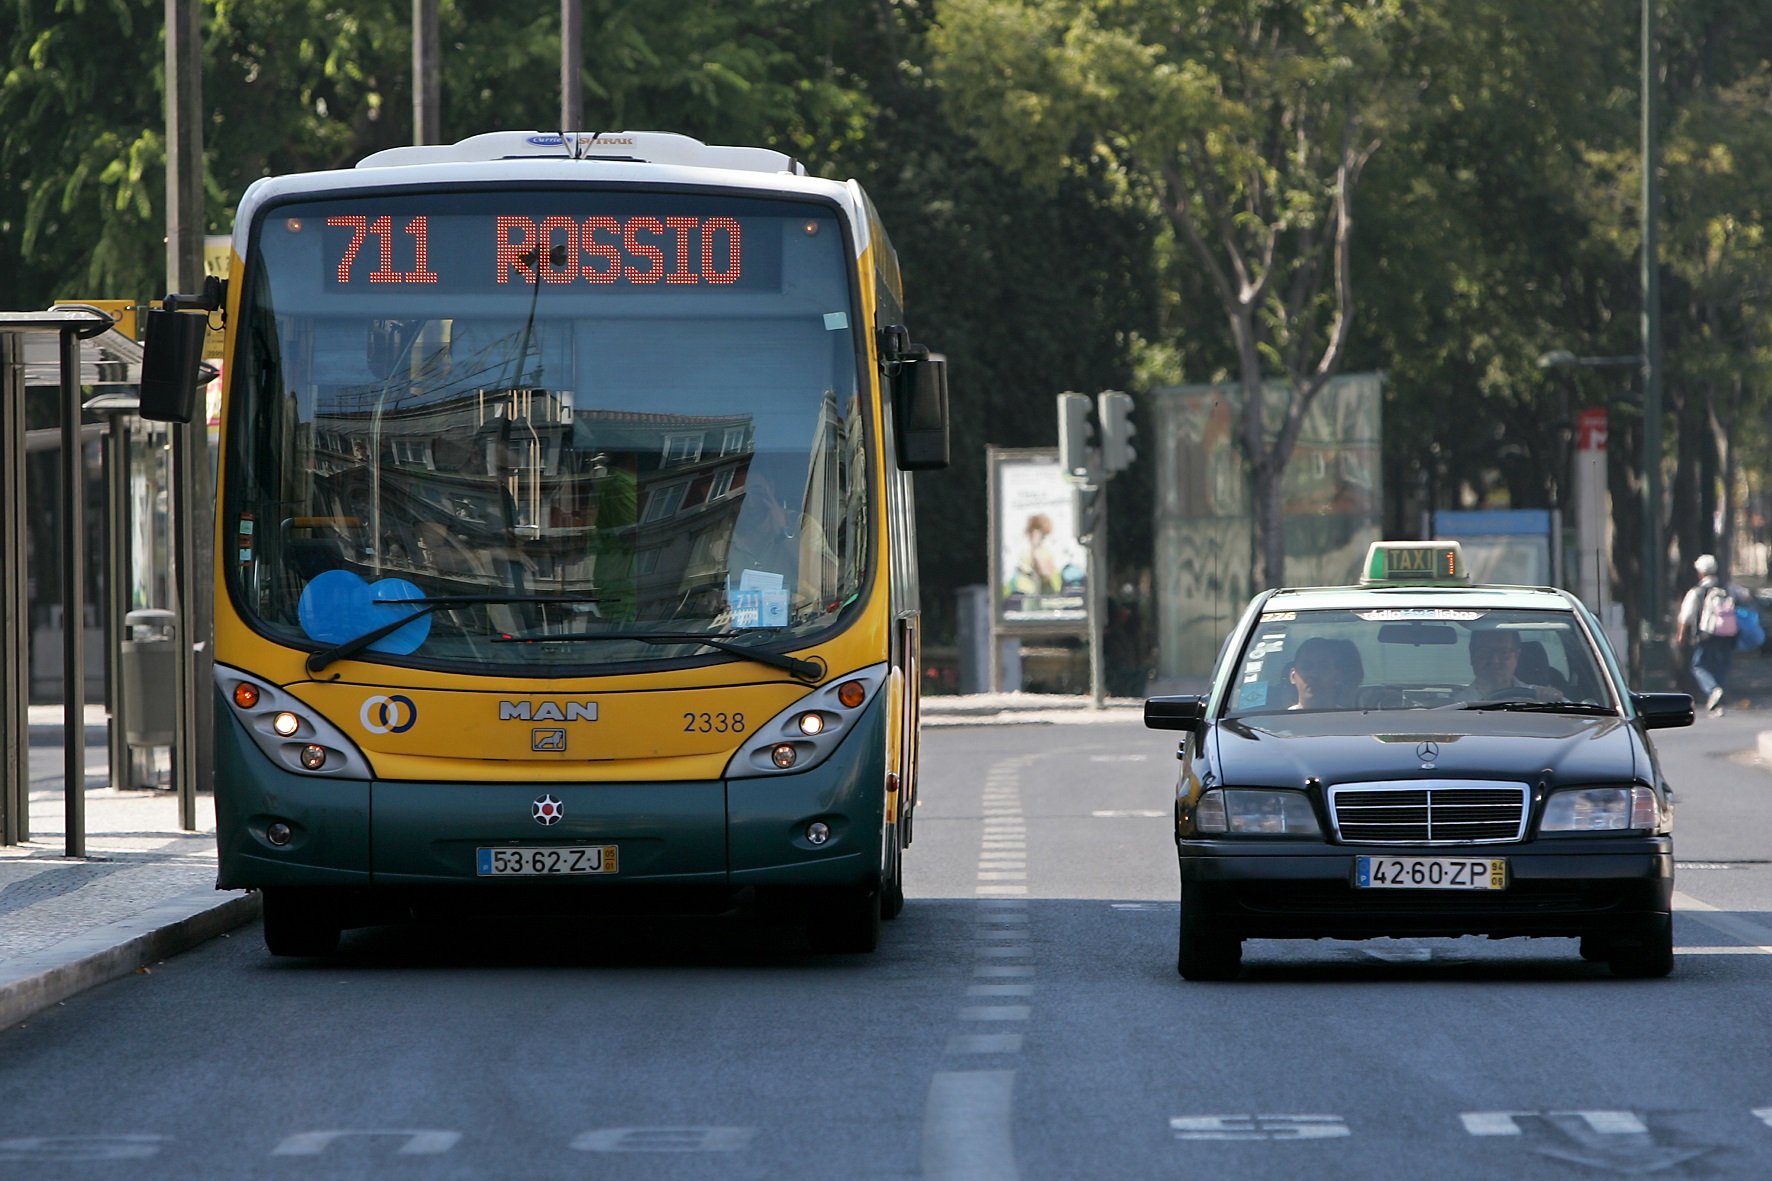 Saiba como andar de transportes em Lisboa gratuitamente durante um mês